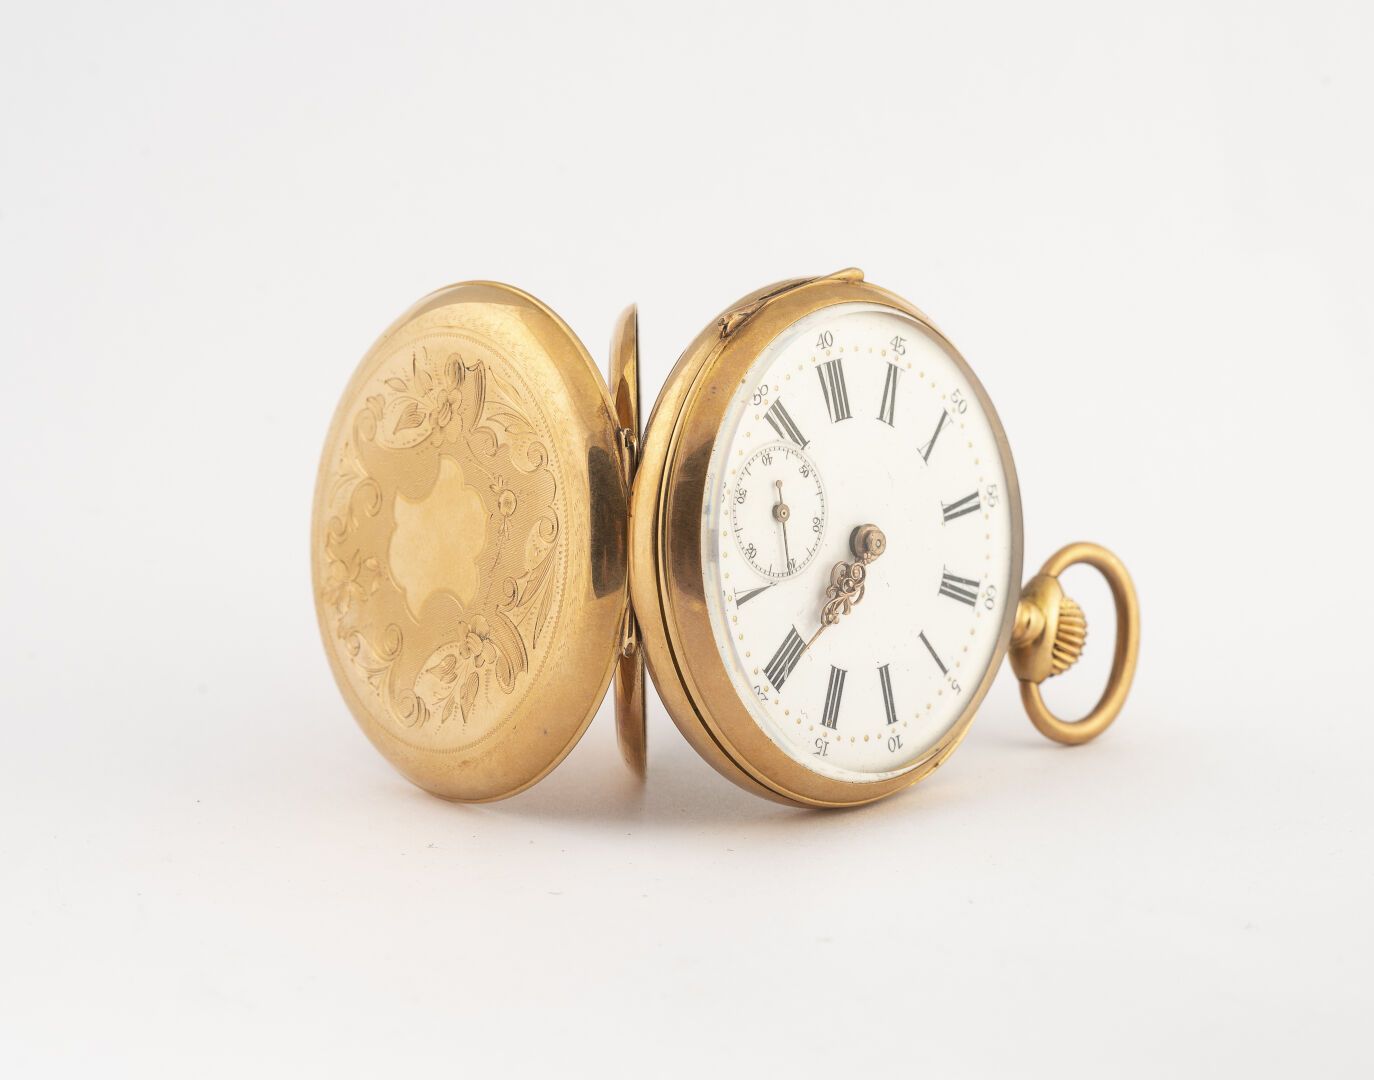 Null 袖珍手表

在750°/°金中

白色表盘与罗马数字

6点钟方向的秒数

带叶子的扭索纹背面

鎏金金属按钮

19世纪晚期

毛重：66.8克

&hellip;